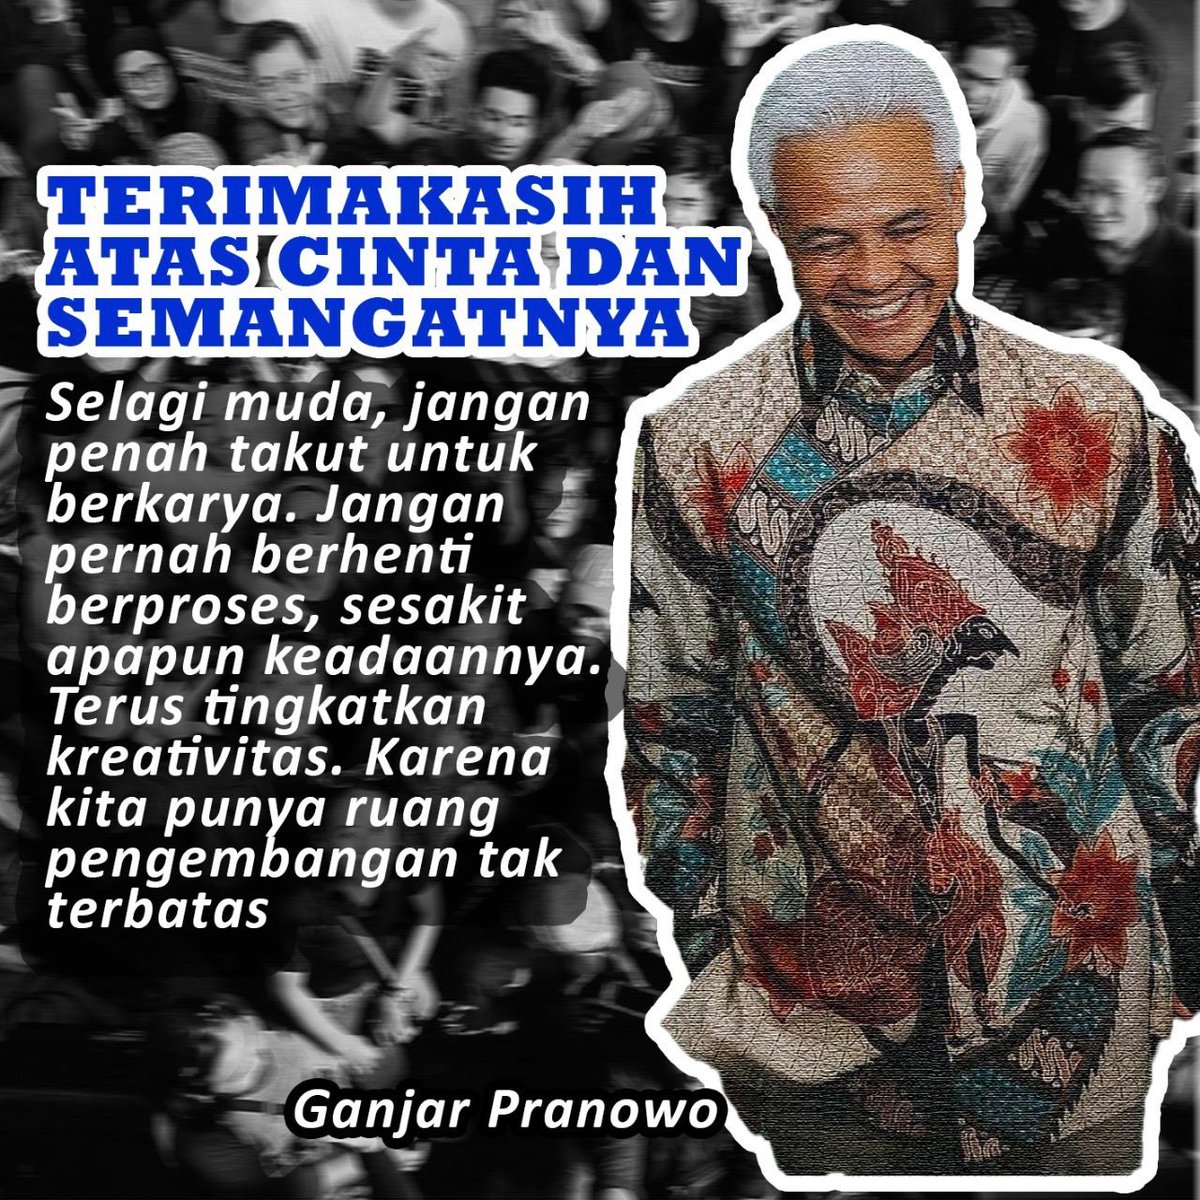 Mas Ganjar, terima kasih karena telah membawa semangat keadilan dalam politik. Tiga Kali Lebih Sejahtera, Indonesia Jaya! @Aff18_005 
#KitaAdalahTiga
#BanggaBersamaGPMMD